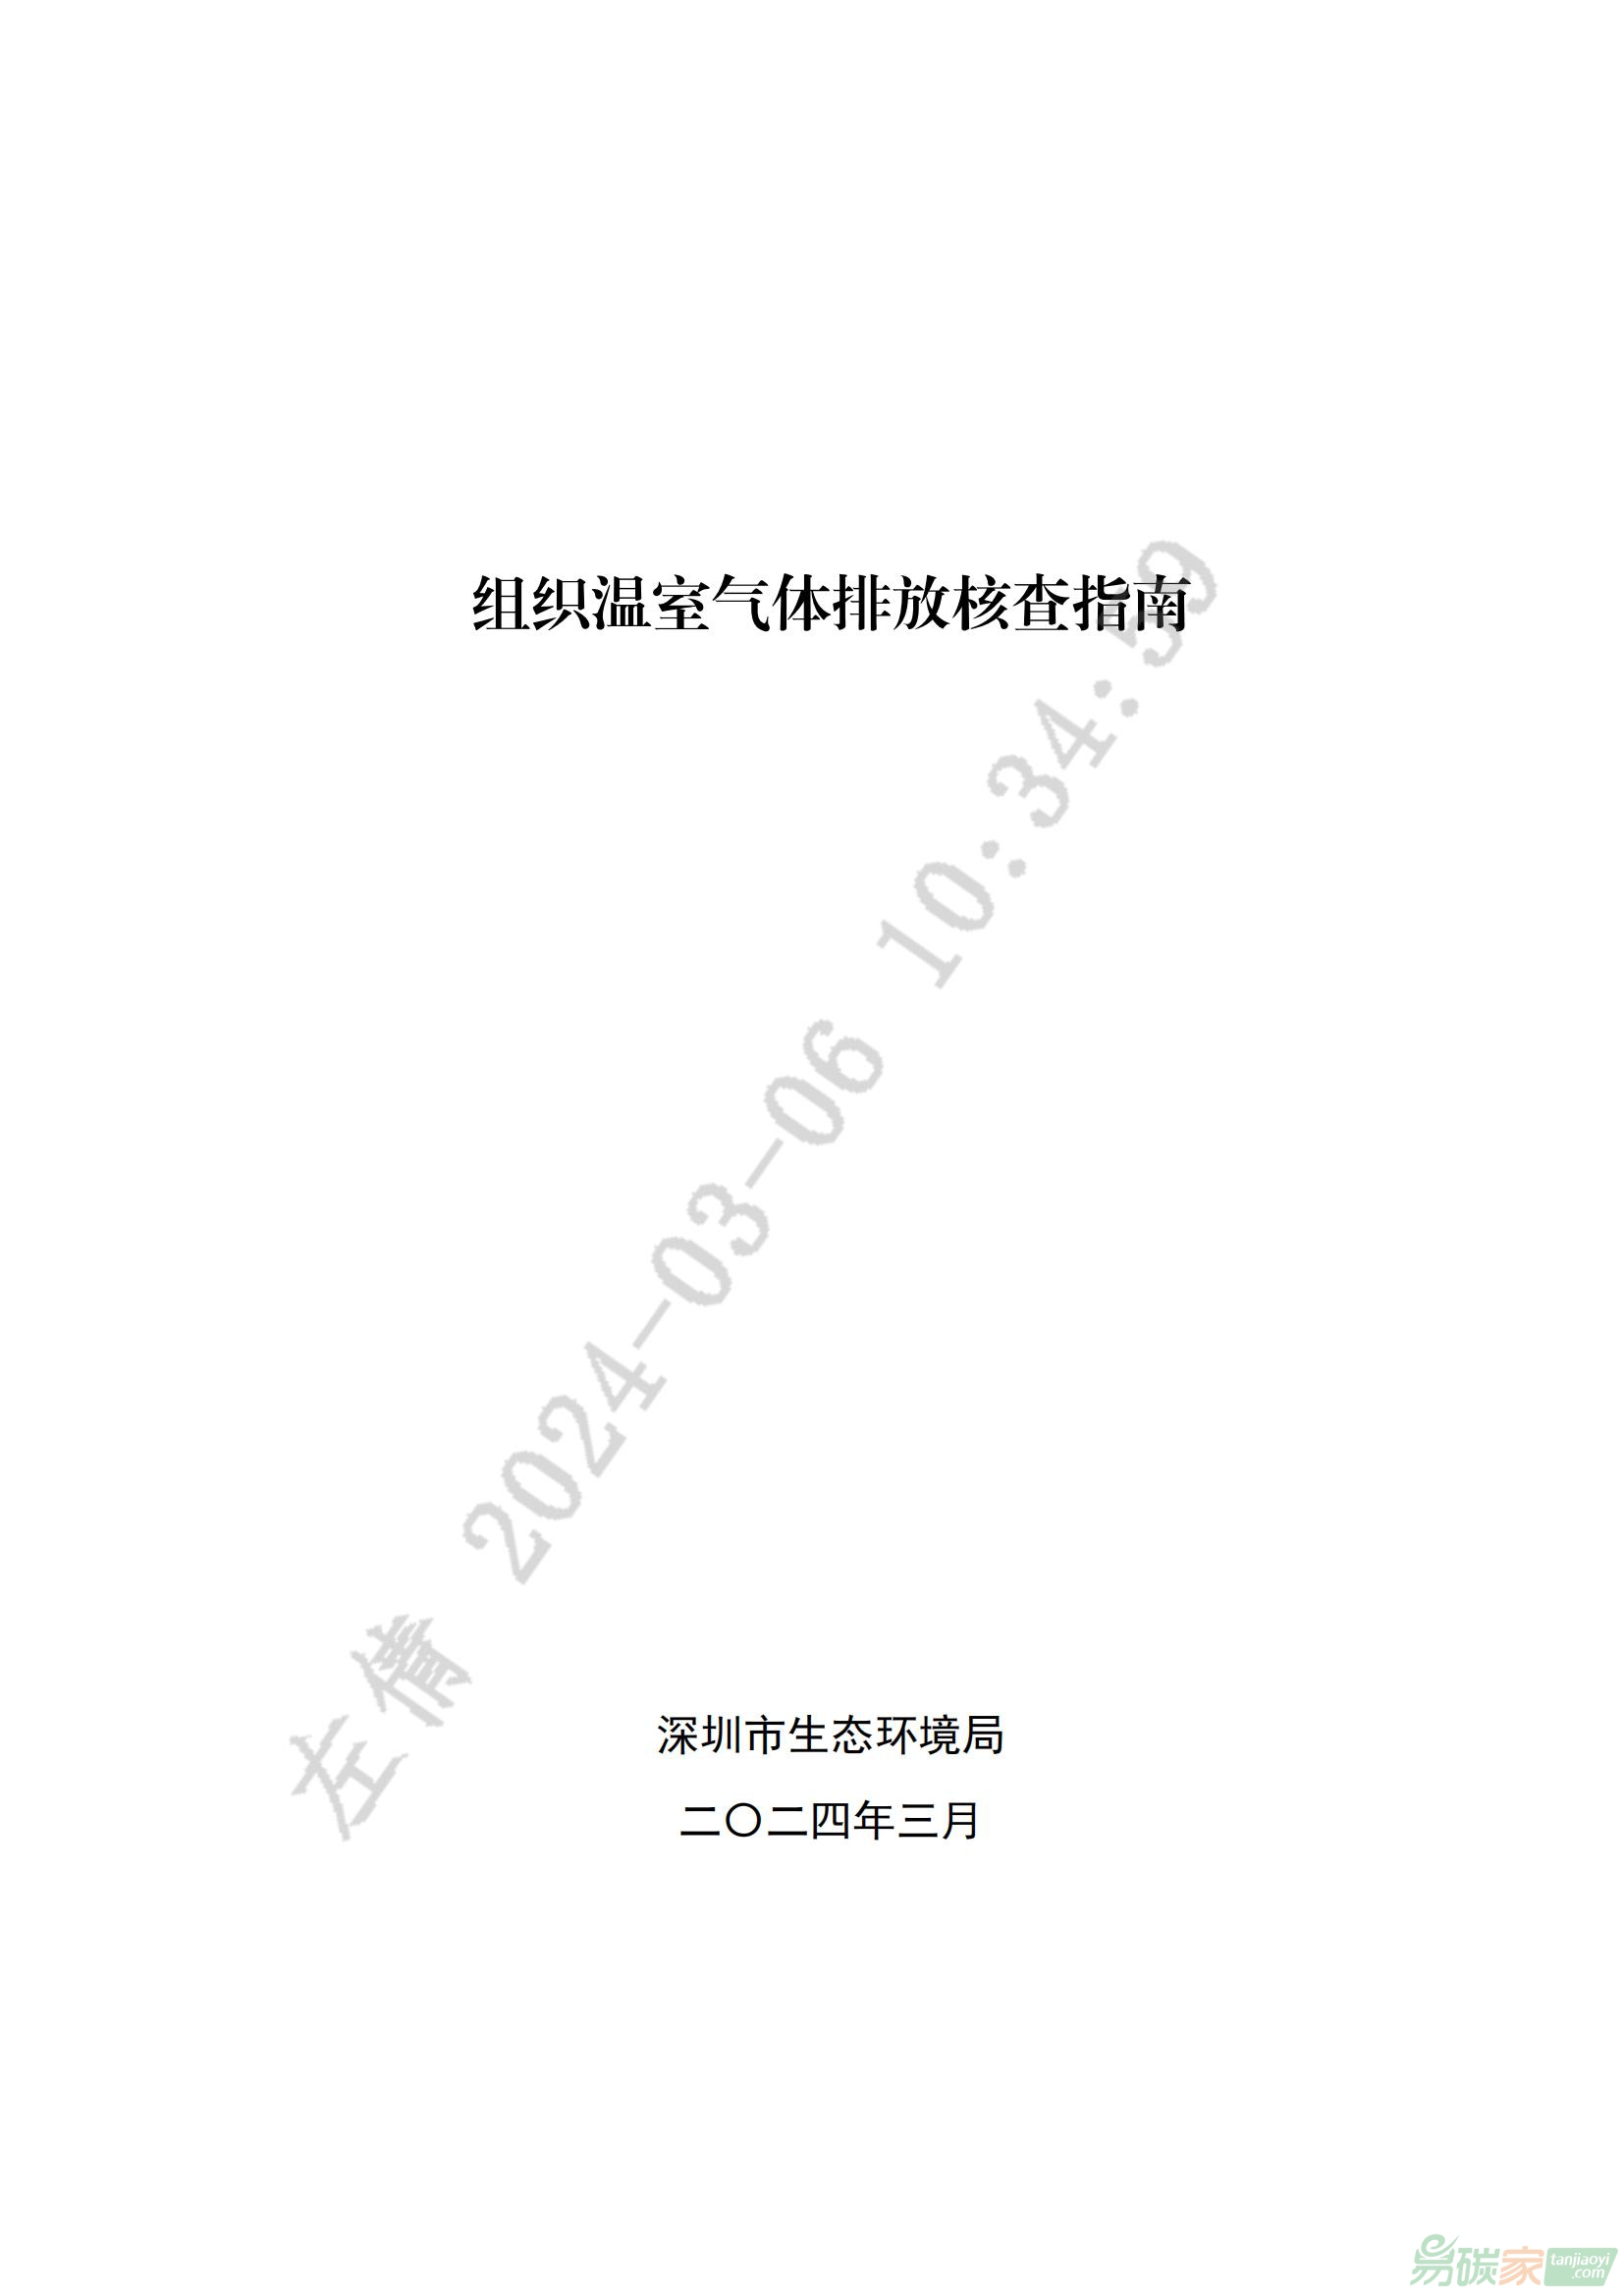 深圳碳威廉希尔体育-组织温室气体排放核查指南.pdf